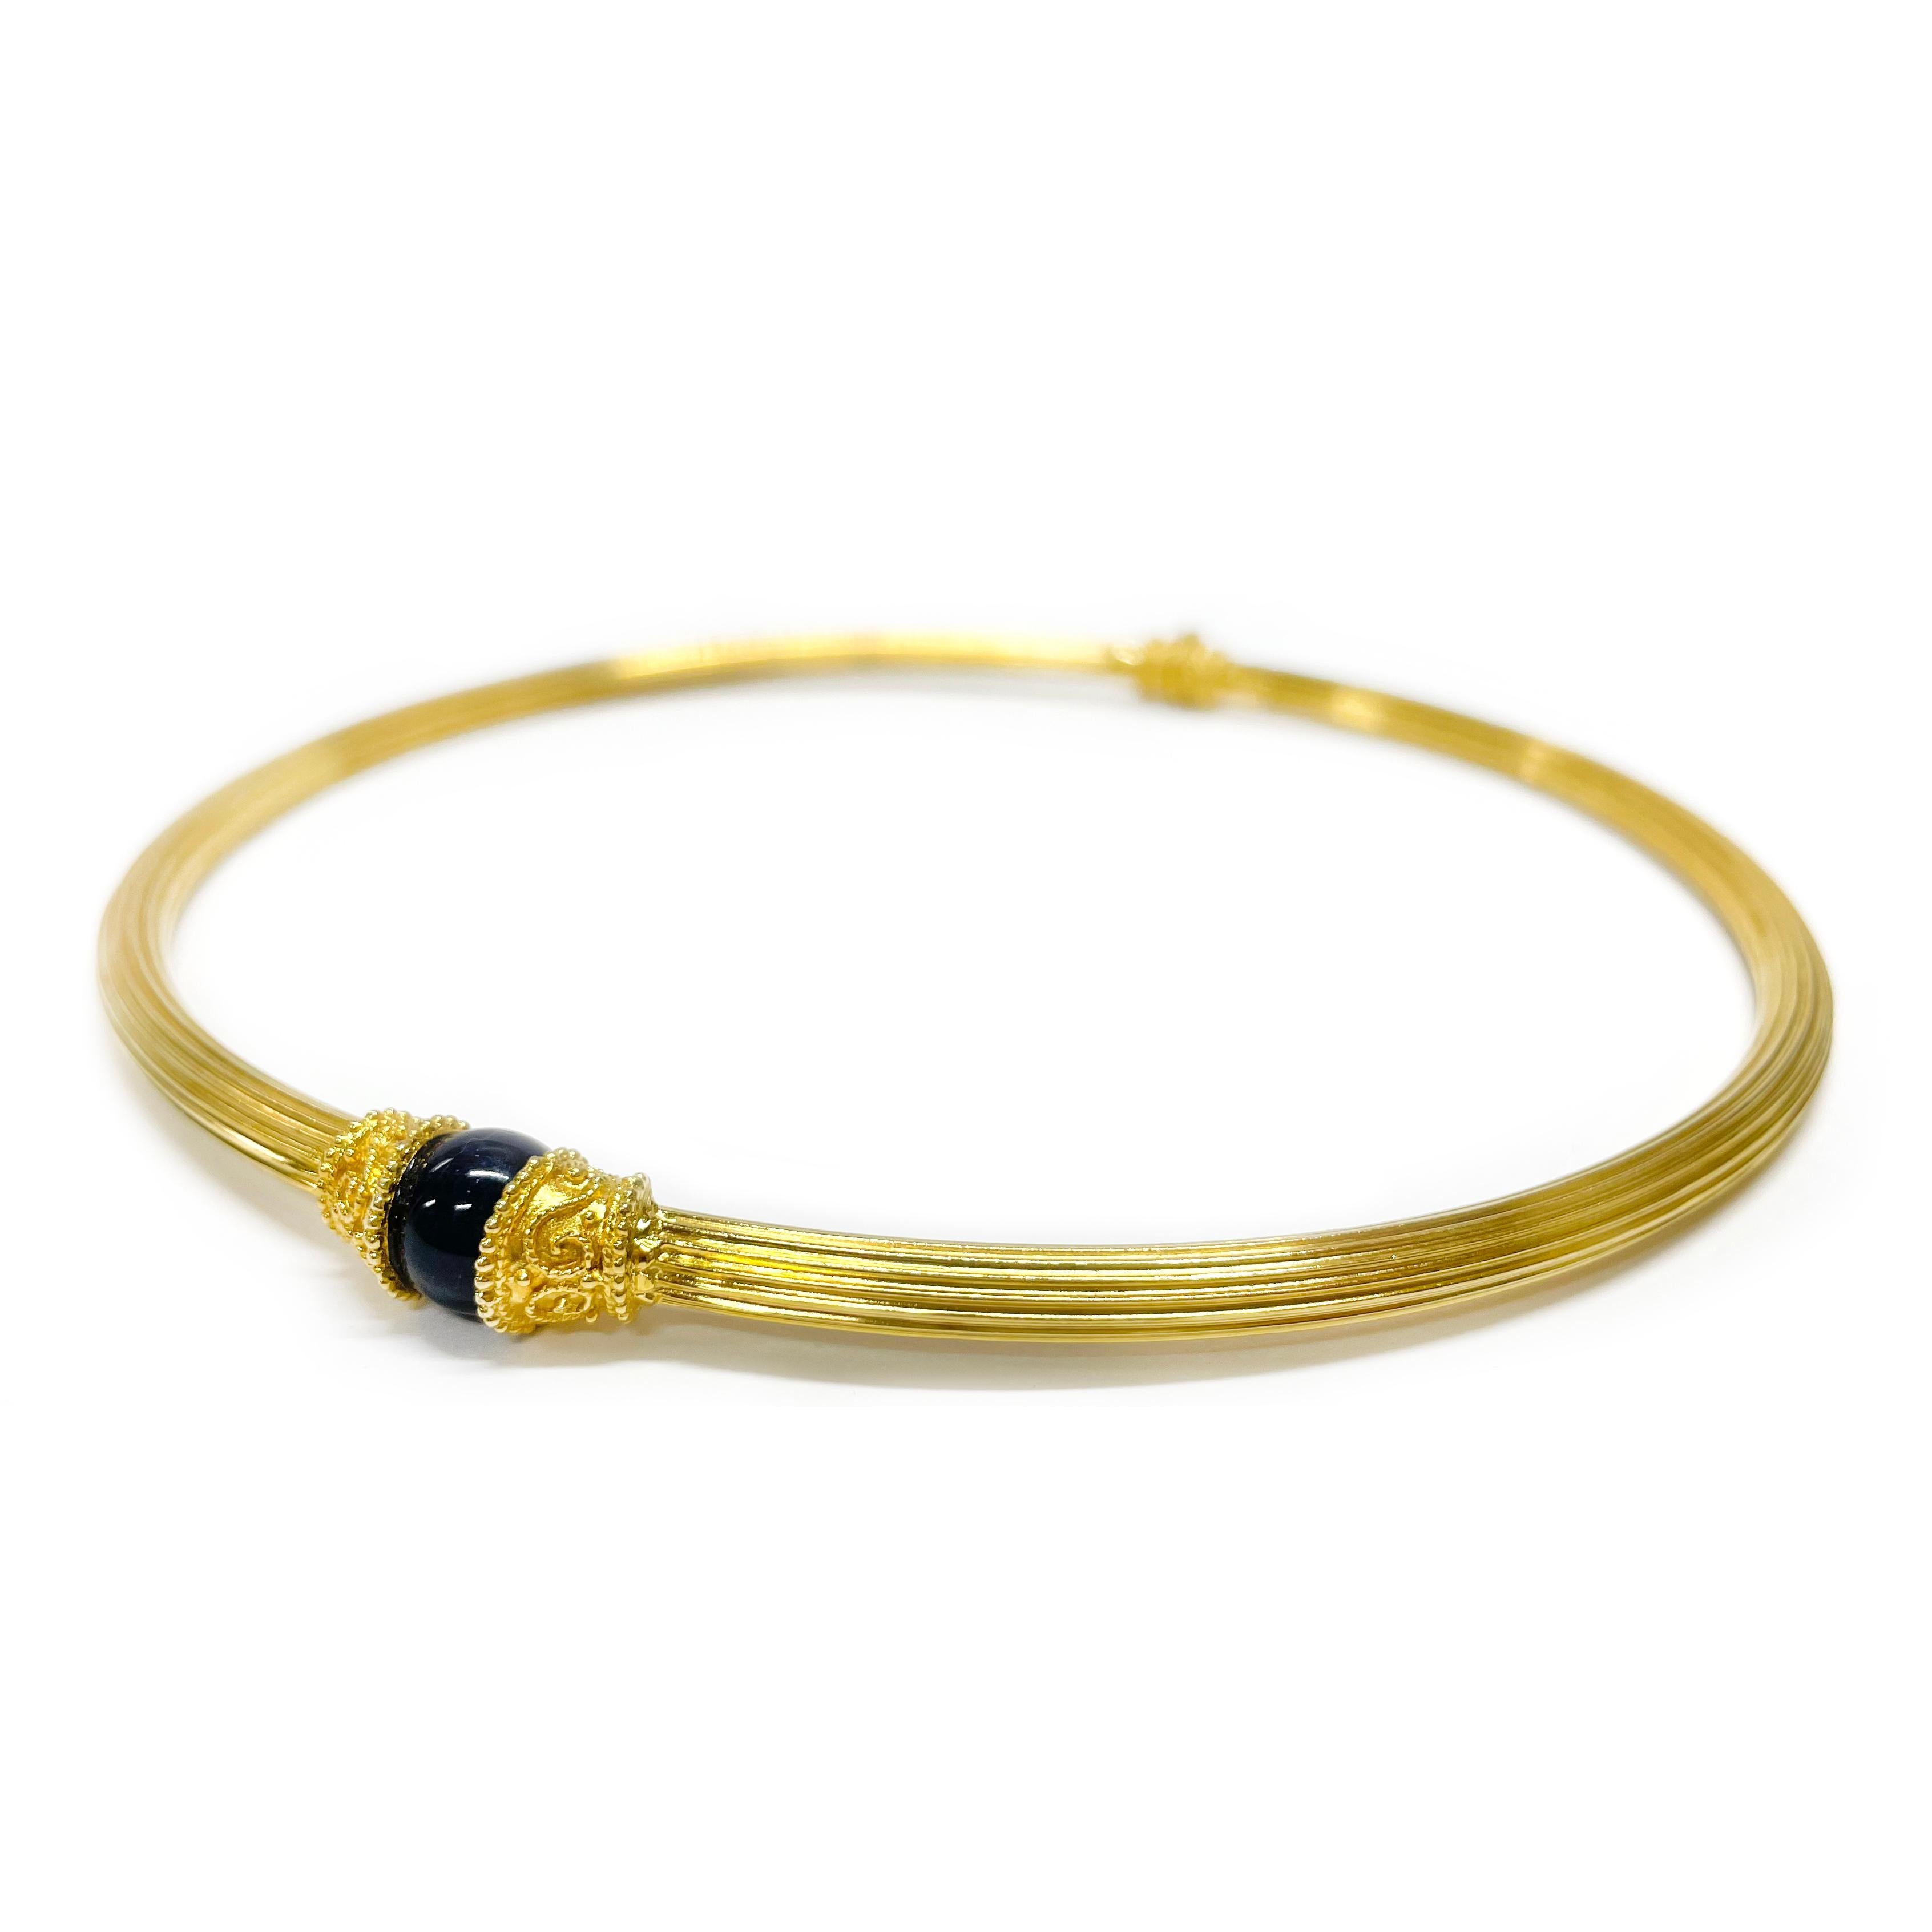 Ilias Lalaounis 18 Karat Gold Sodalith Halsband/Choker Halskette. Dieses einzigartige 8 mm breite Scharnier-Kropfband ist an einem Ende mit einer einzelnen blauen 10 mm Sodalith-Perle besetzt. An beiden Enden des Halsreifs und in der Nähe des